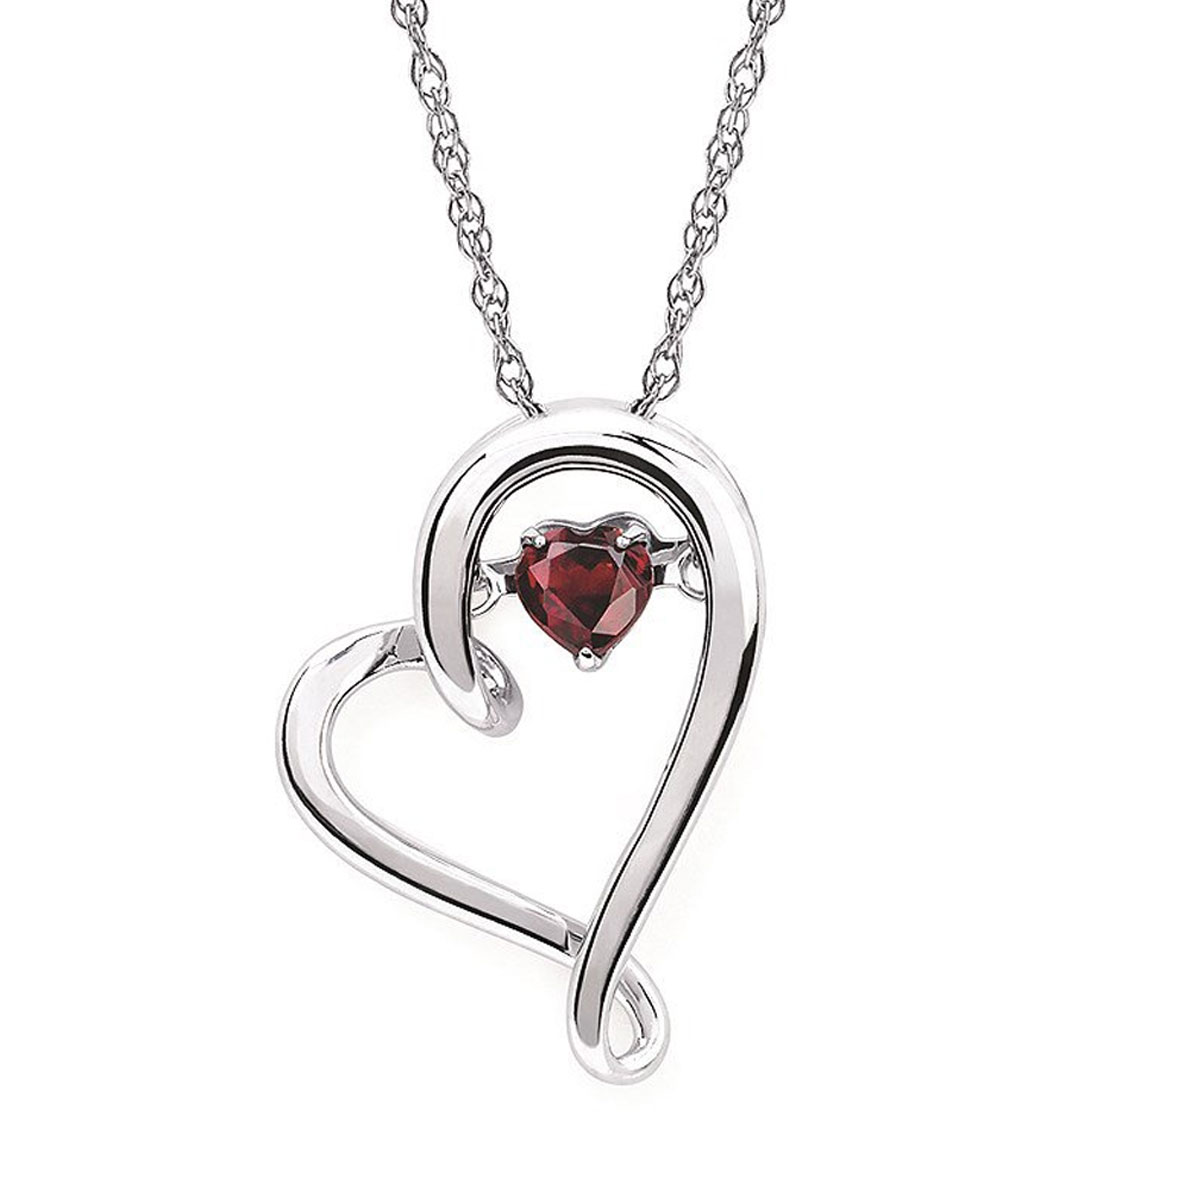 Sterling Silver Heart Pendant | Roper's Jewelers - Jewelry in Auburn CA